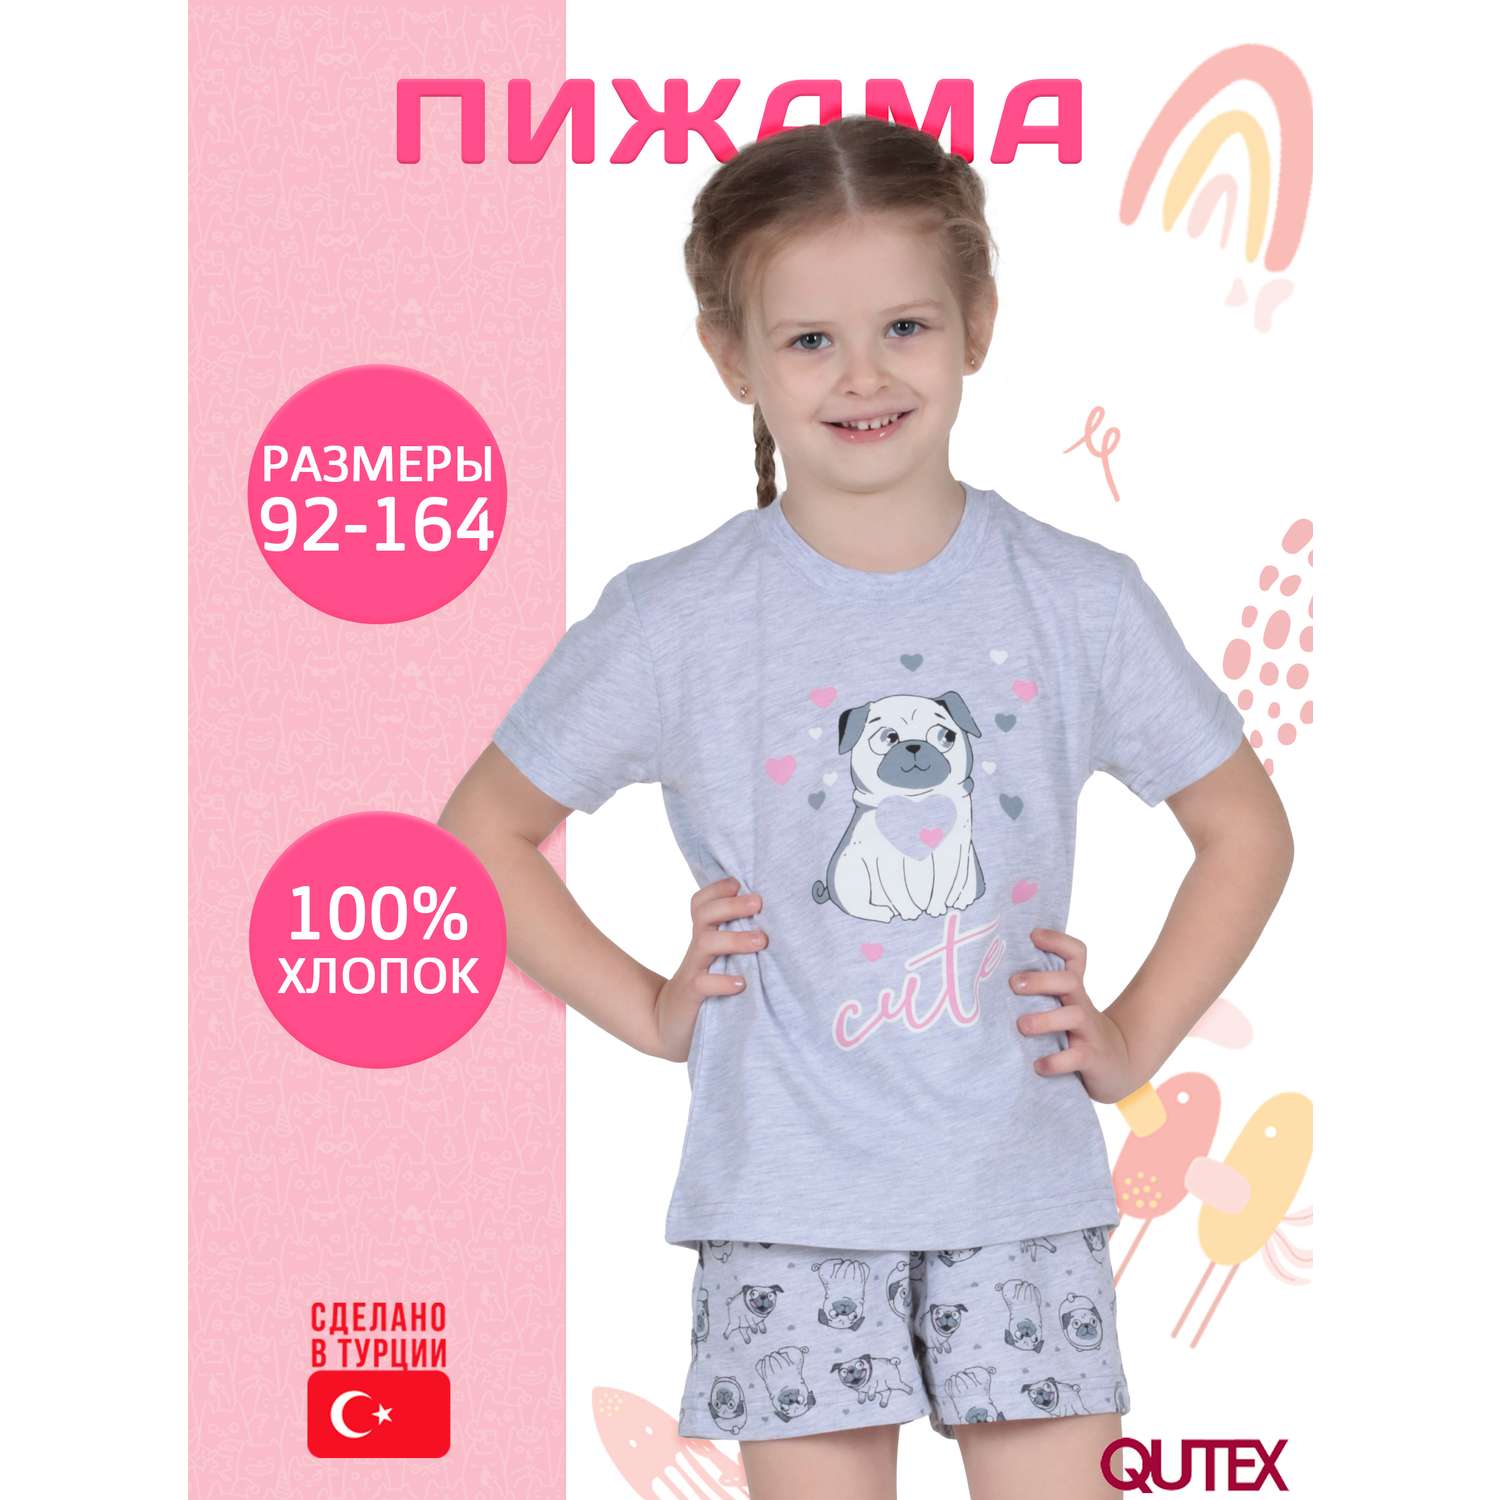 Пижама QUTEX 2301-004-1Q54 - фото 2